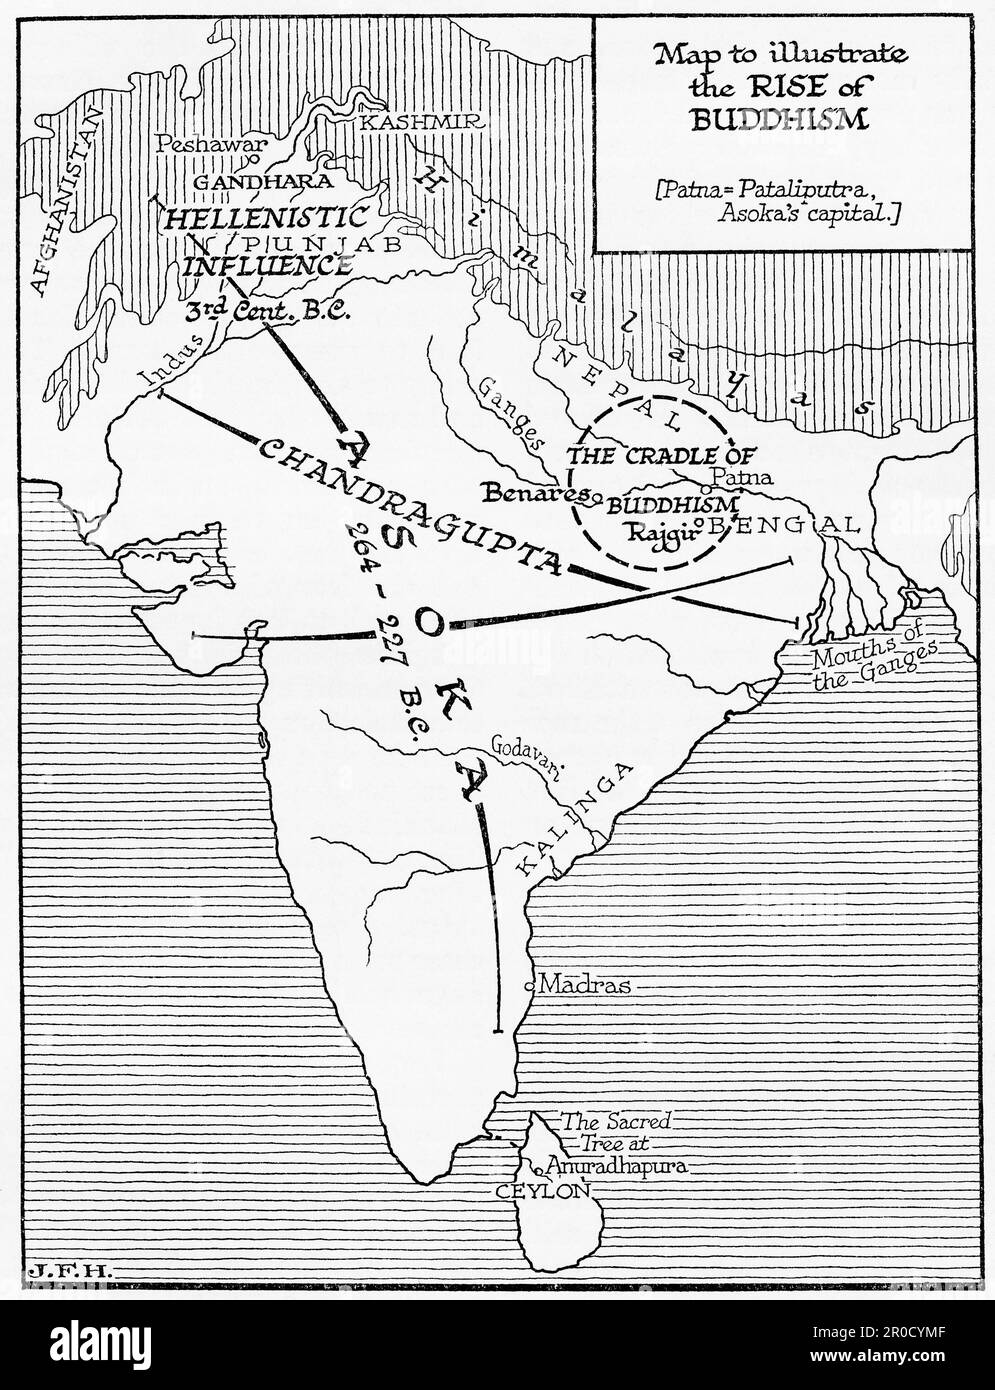 Mapa para ilustrar el auge del budismo en la India. Del libro Esquema de la Historia por H.G. Wells, publicado en 1920. Foto de stock